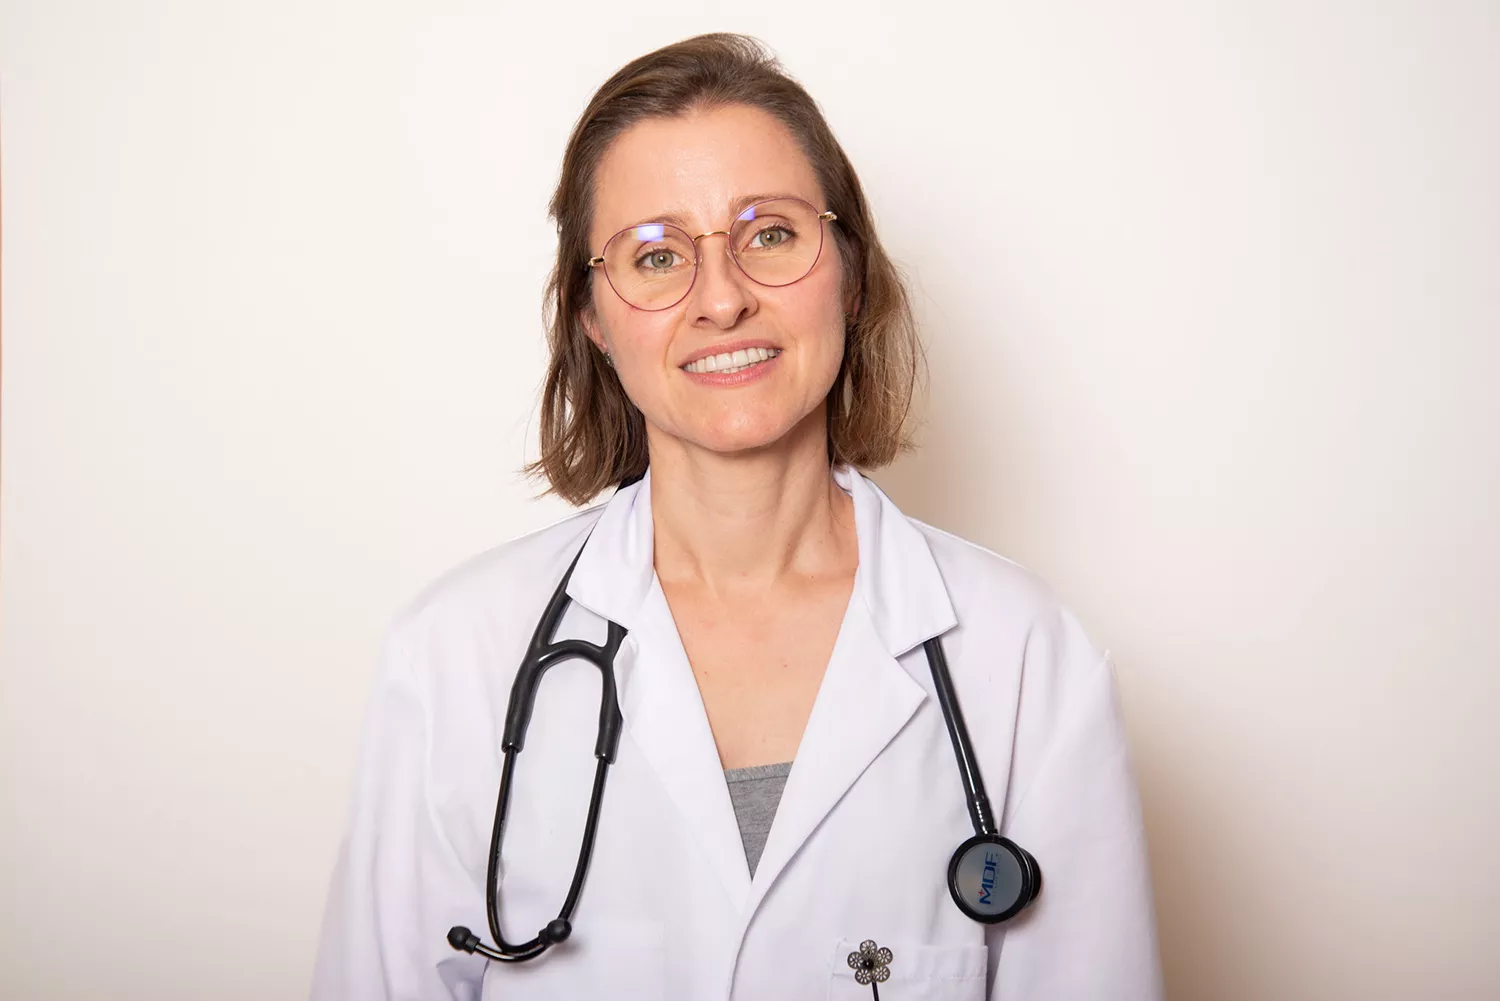 DRA. JULIA MARTIN CARDIOLOGA (Valoración cardiológica precoz después de ingreso hospitalario)